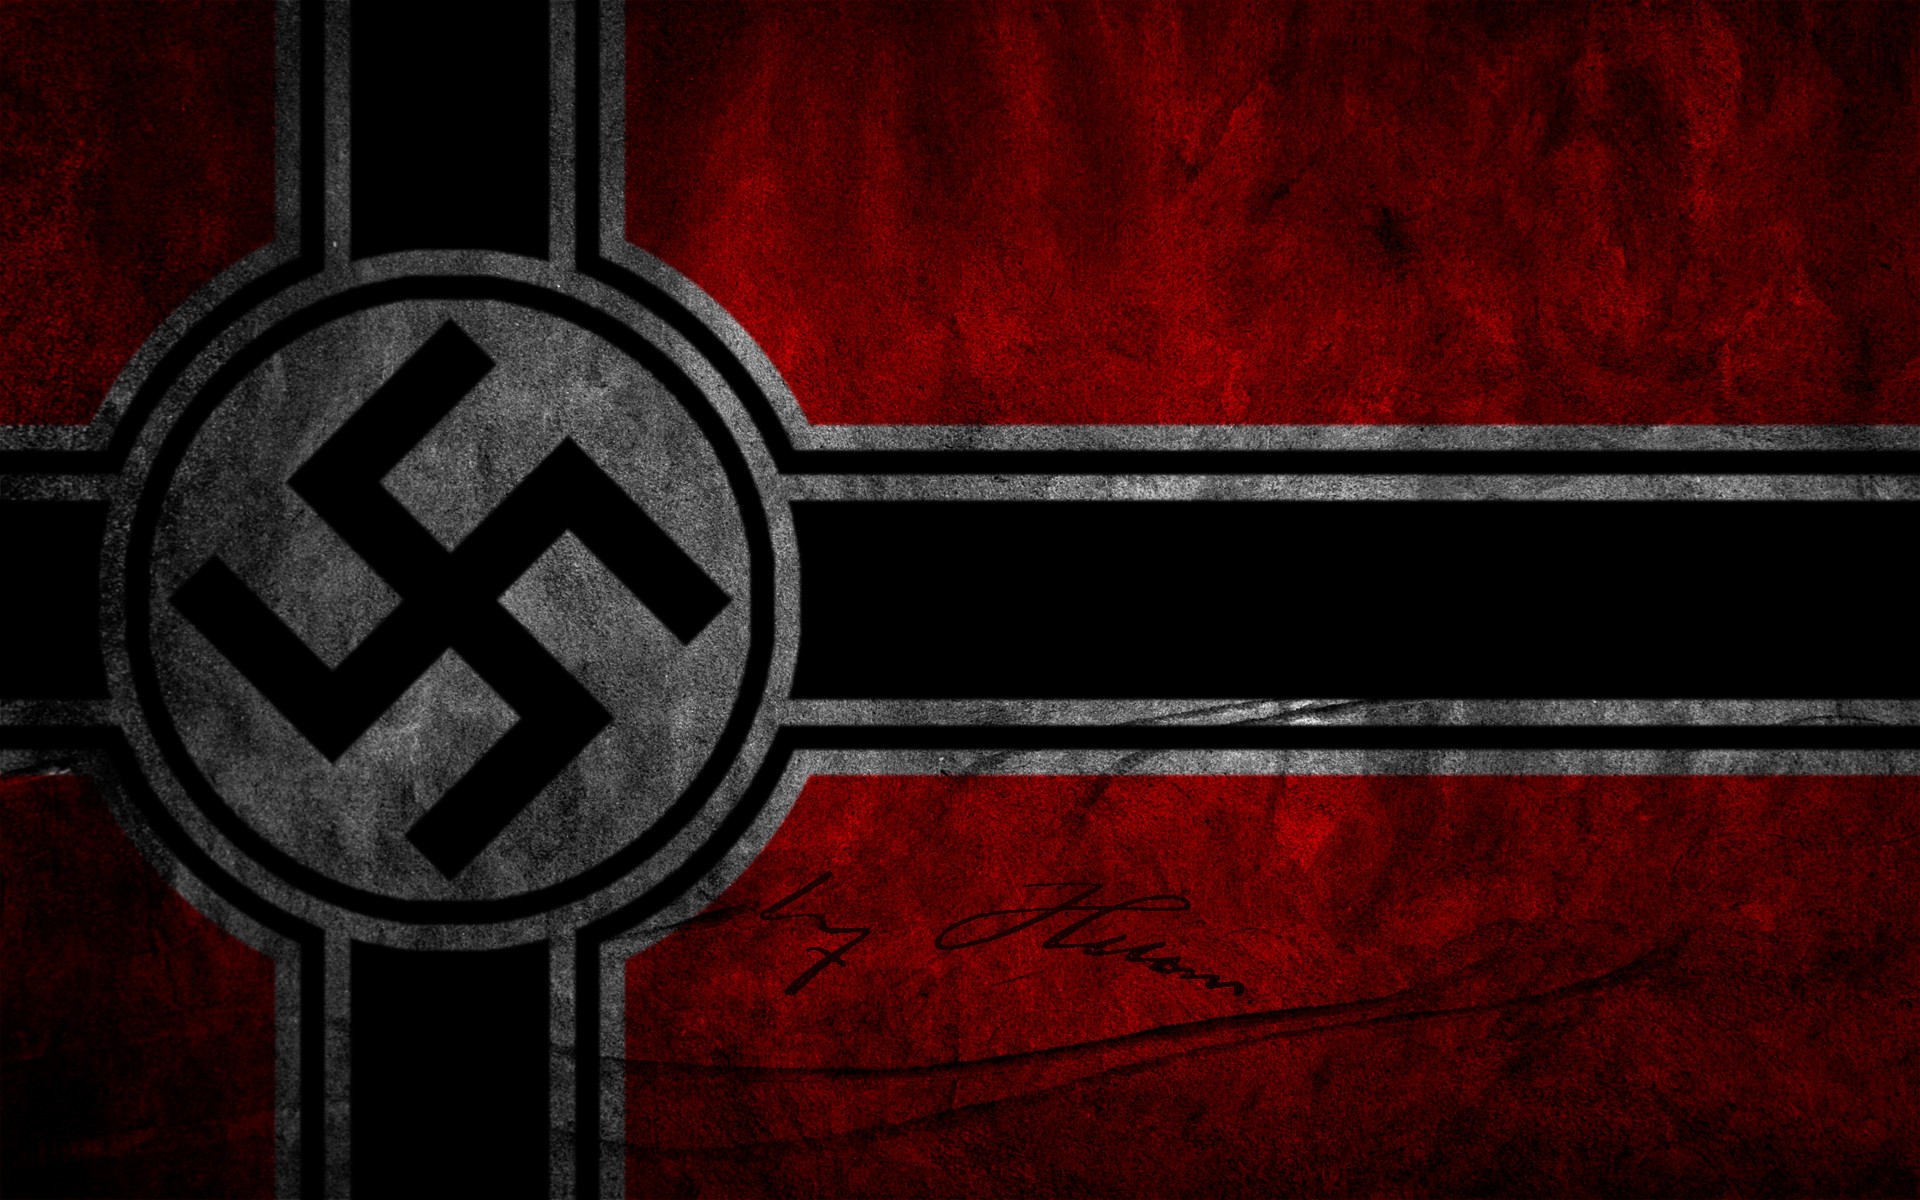 Фон сс. Флаг 3 рейха нацистской Германии.